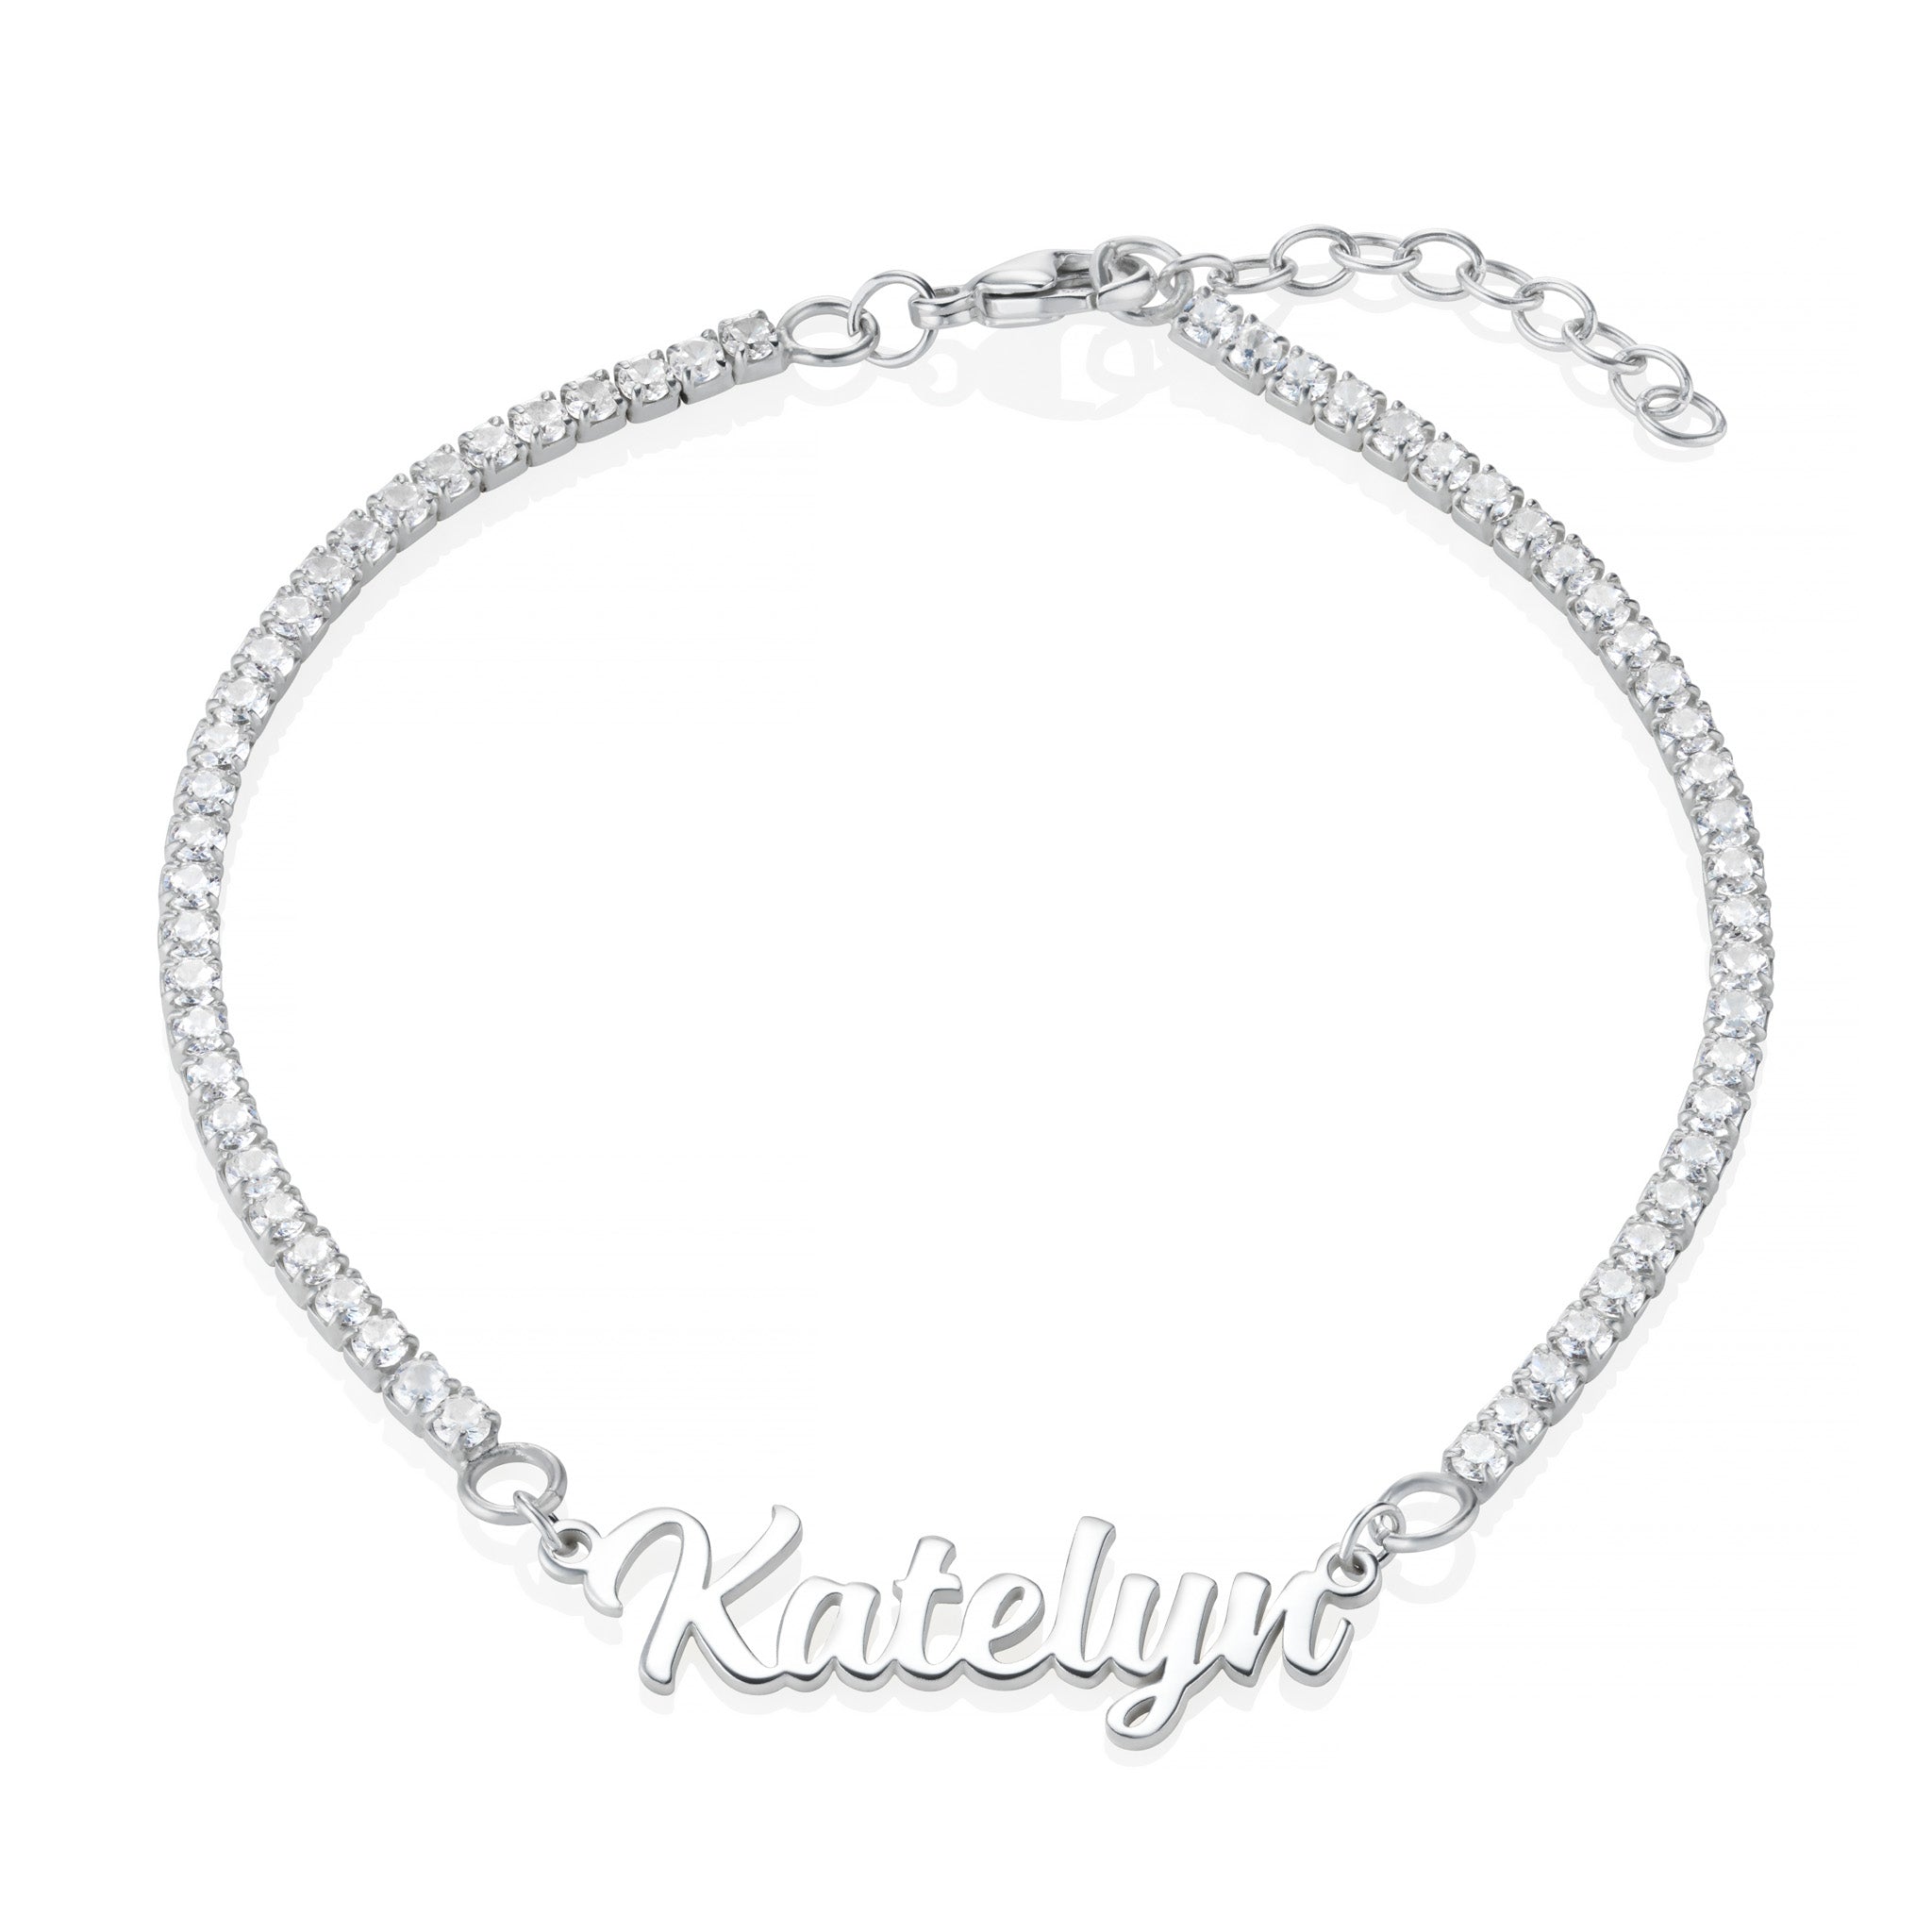 Personalised Sterling Silver Name Tennis Bracelet